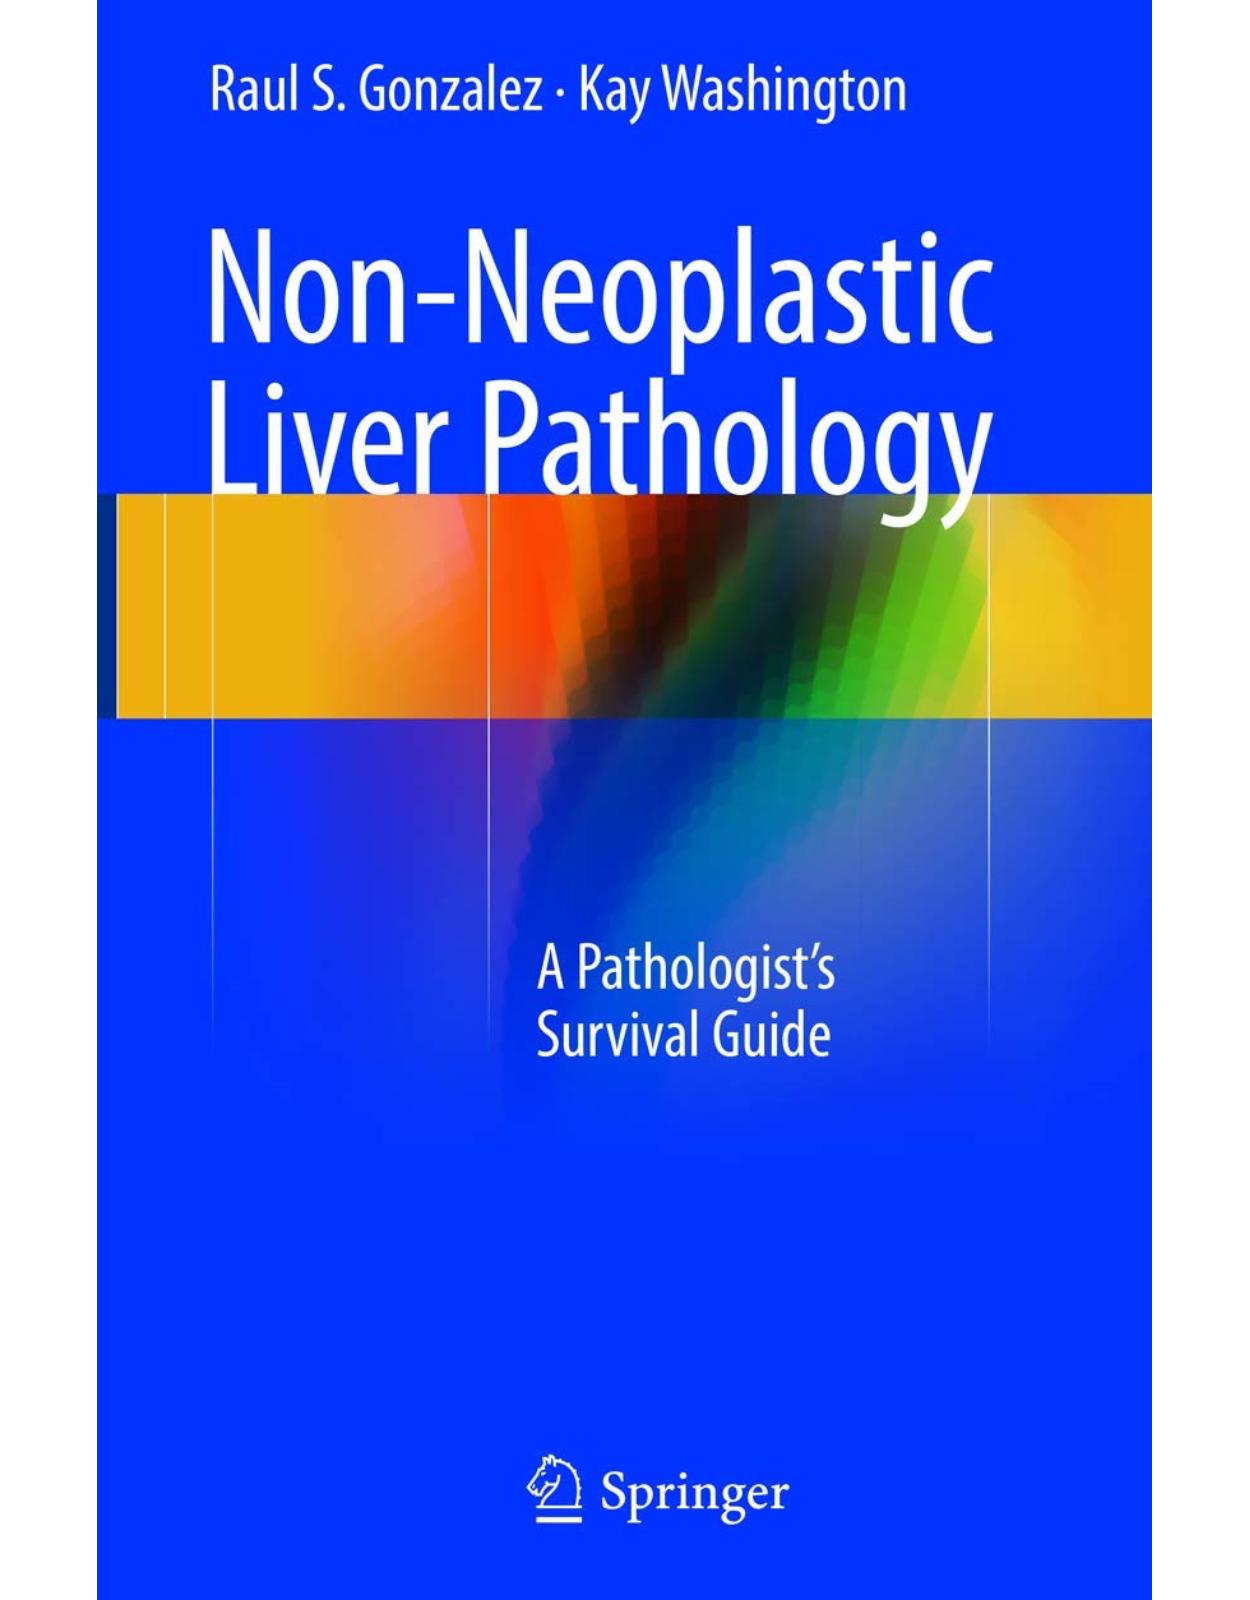 Non-Neoplastic Liver Pathology: A Pathologist’s Survival Guide 